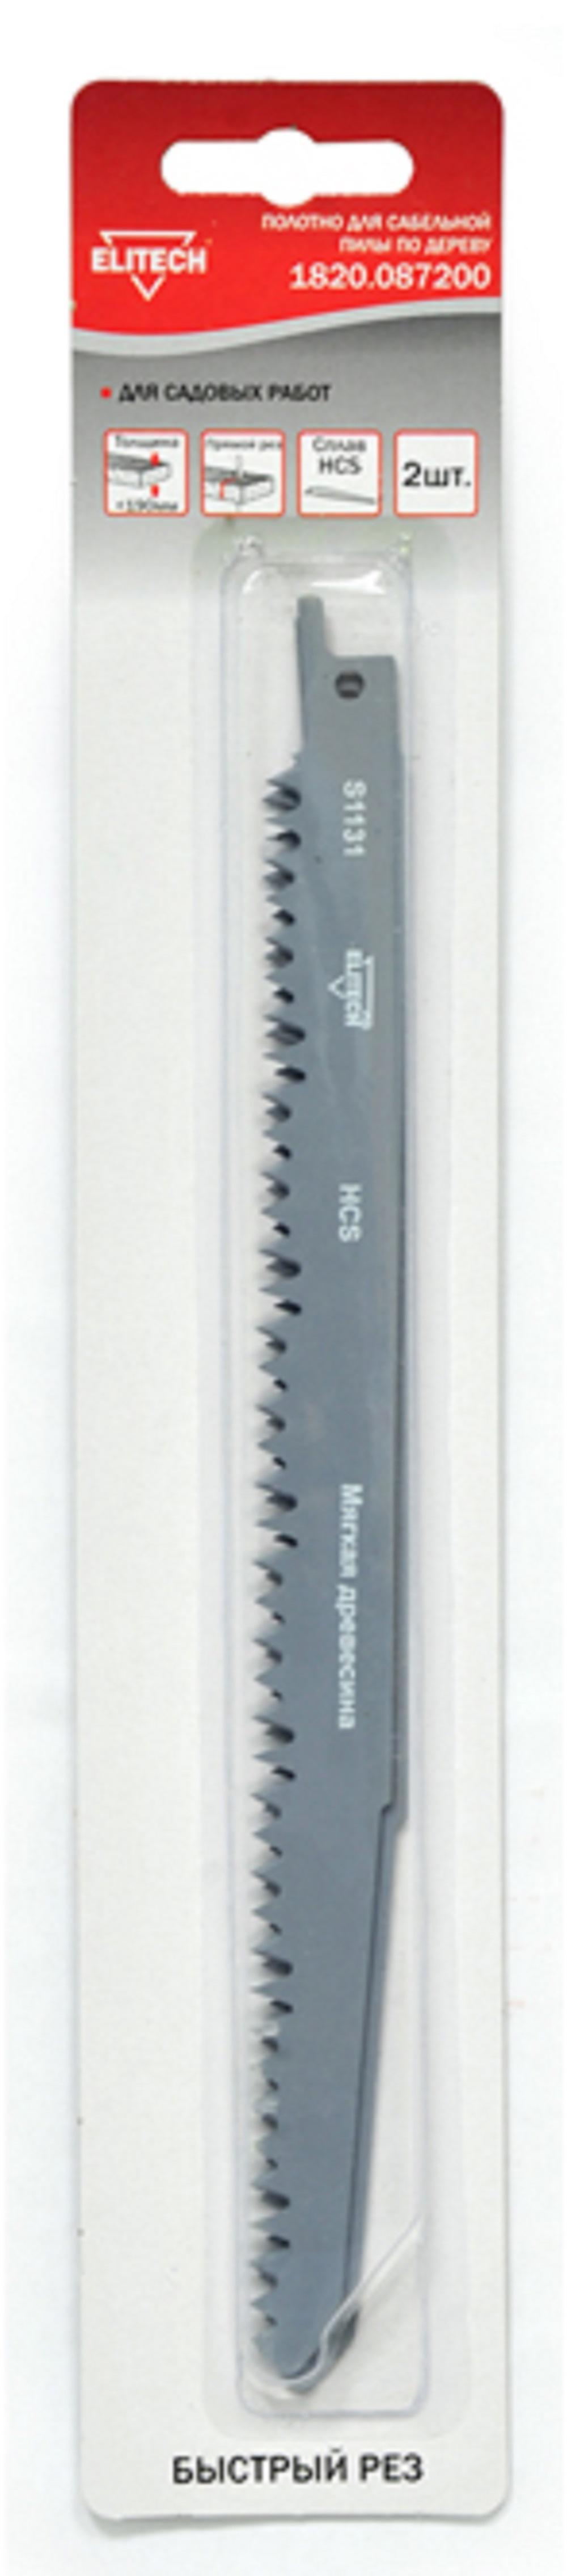 Полотно для сабельной пилы ELITECH 210мм, HCS (1820.087200) пильное полотно для сабельной пилы elitech